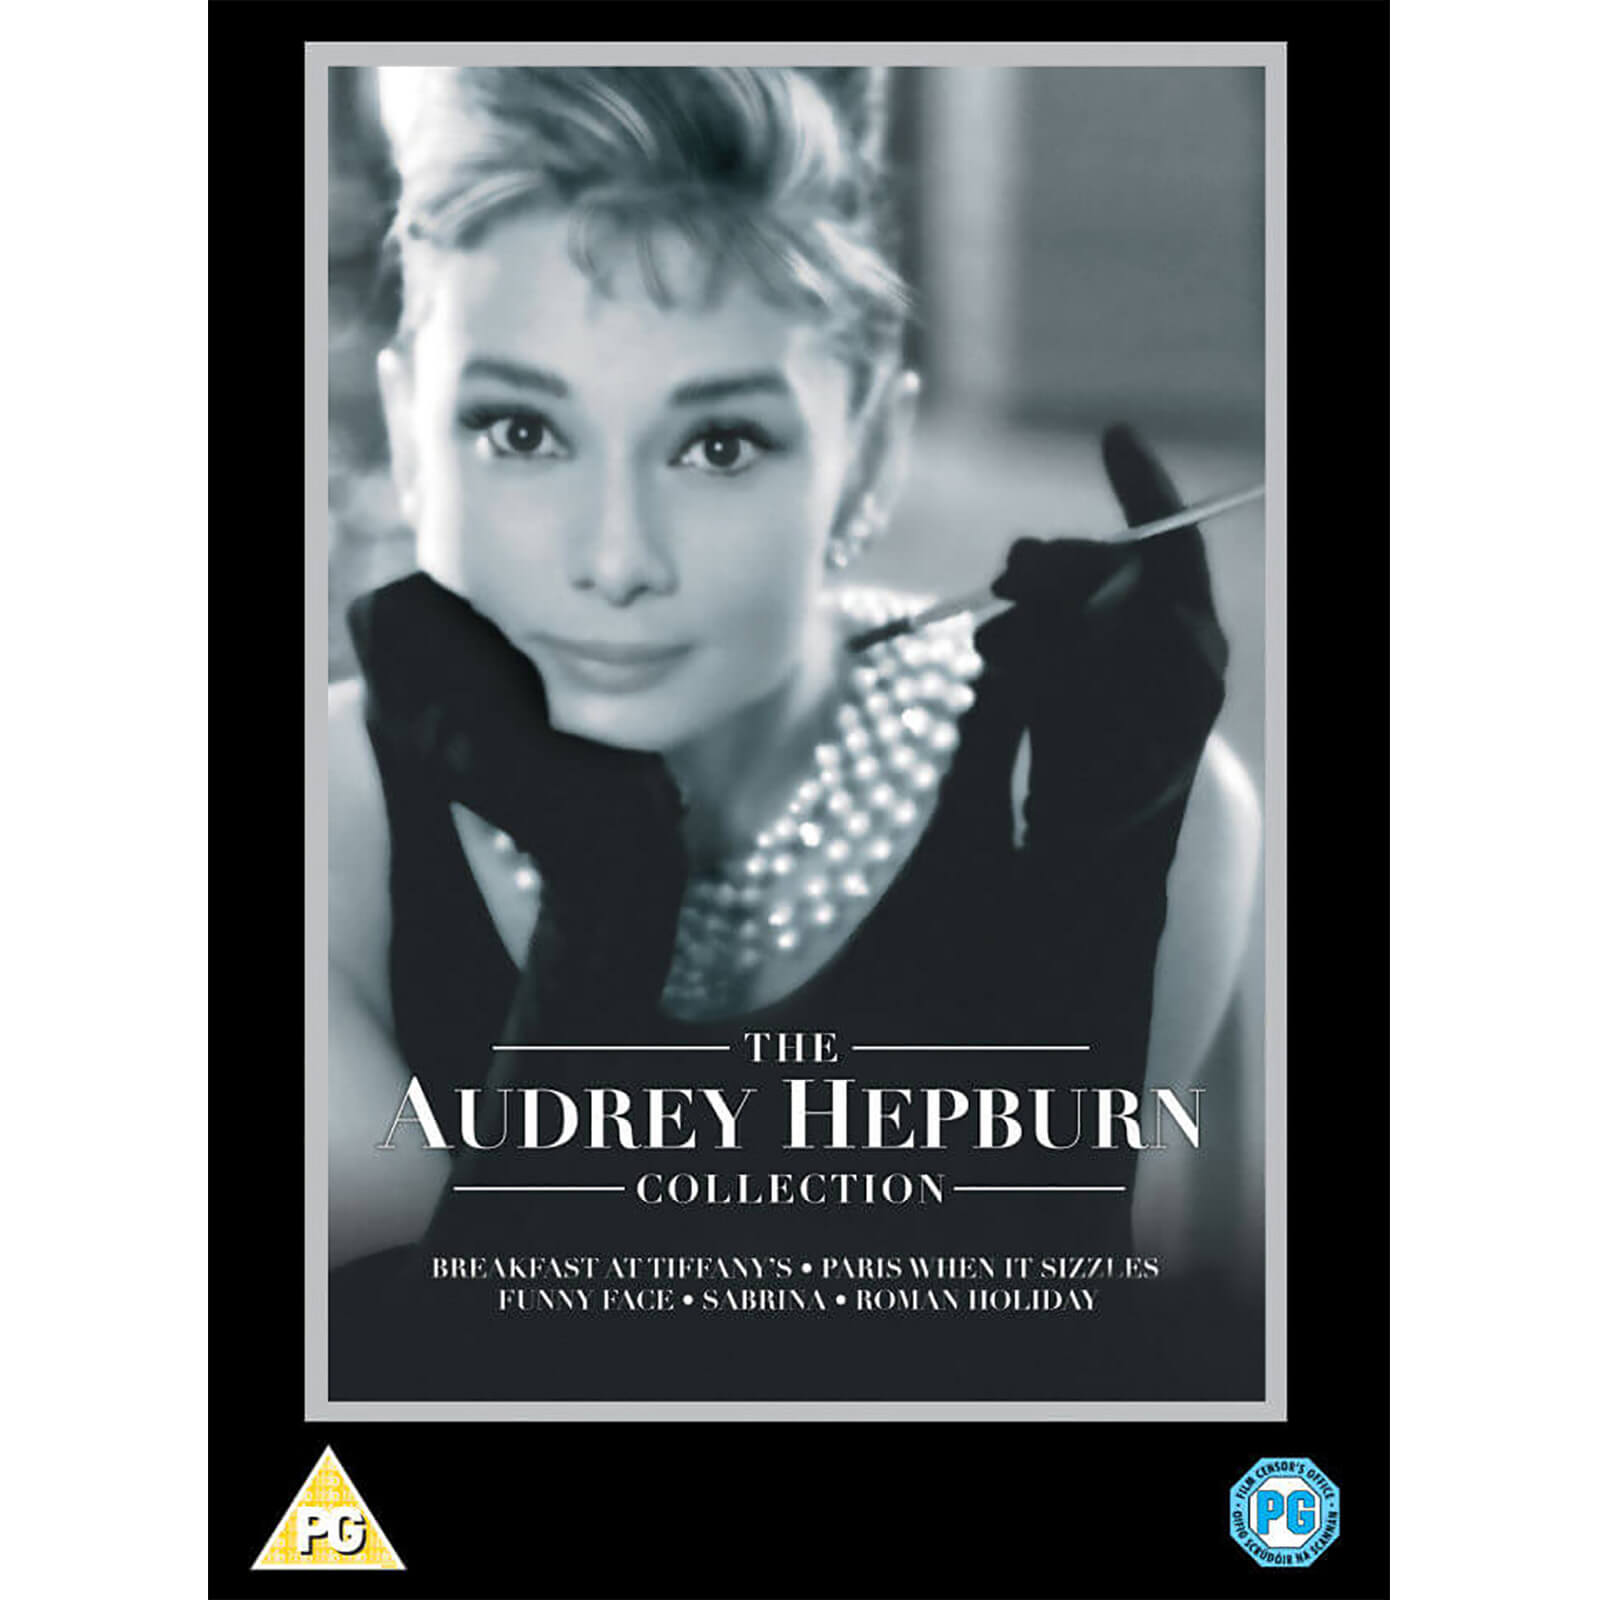 Das Audrey Hepburn Box-Set von Paramount Home Entertainment